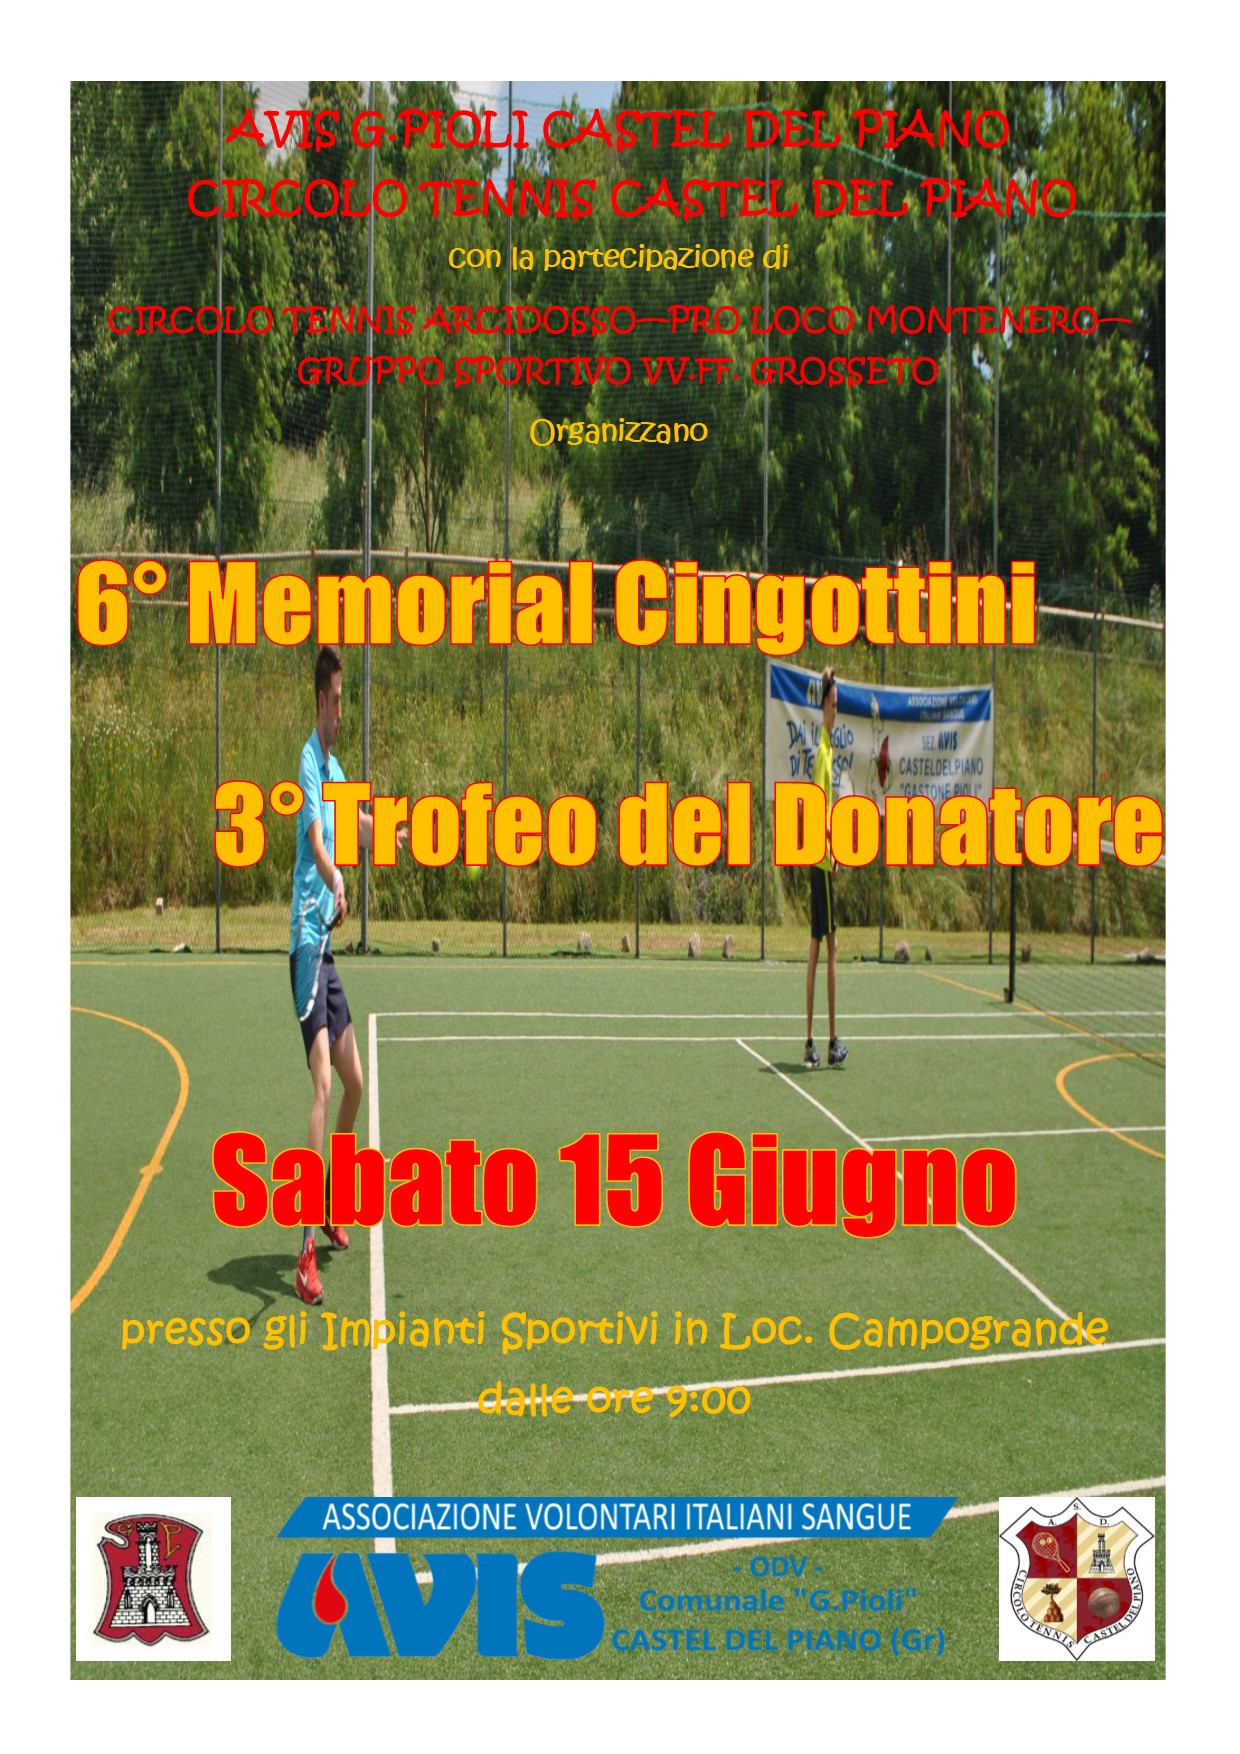 Memorial Cingottini 2019